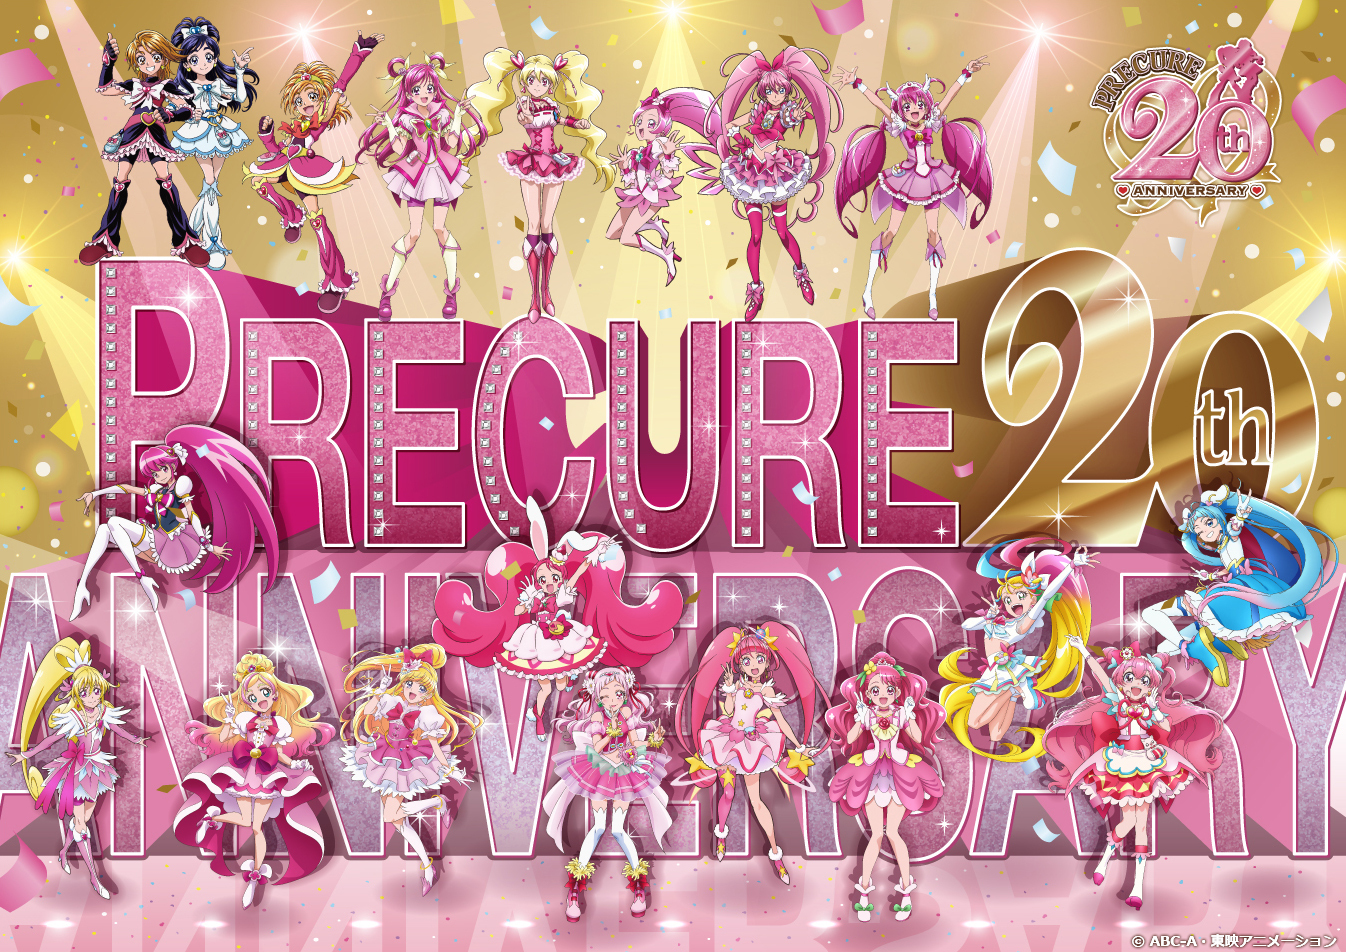 Pretty Cure aniversario numeor 20